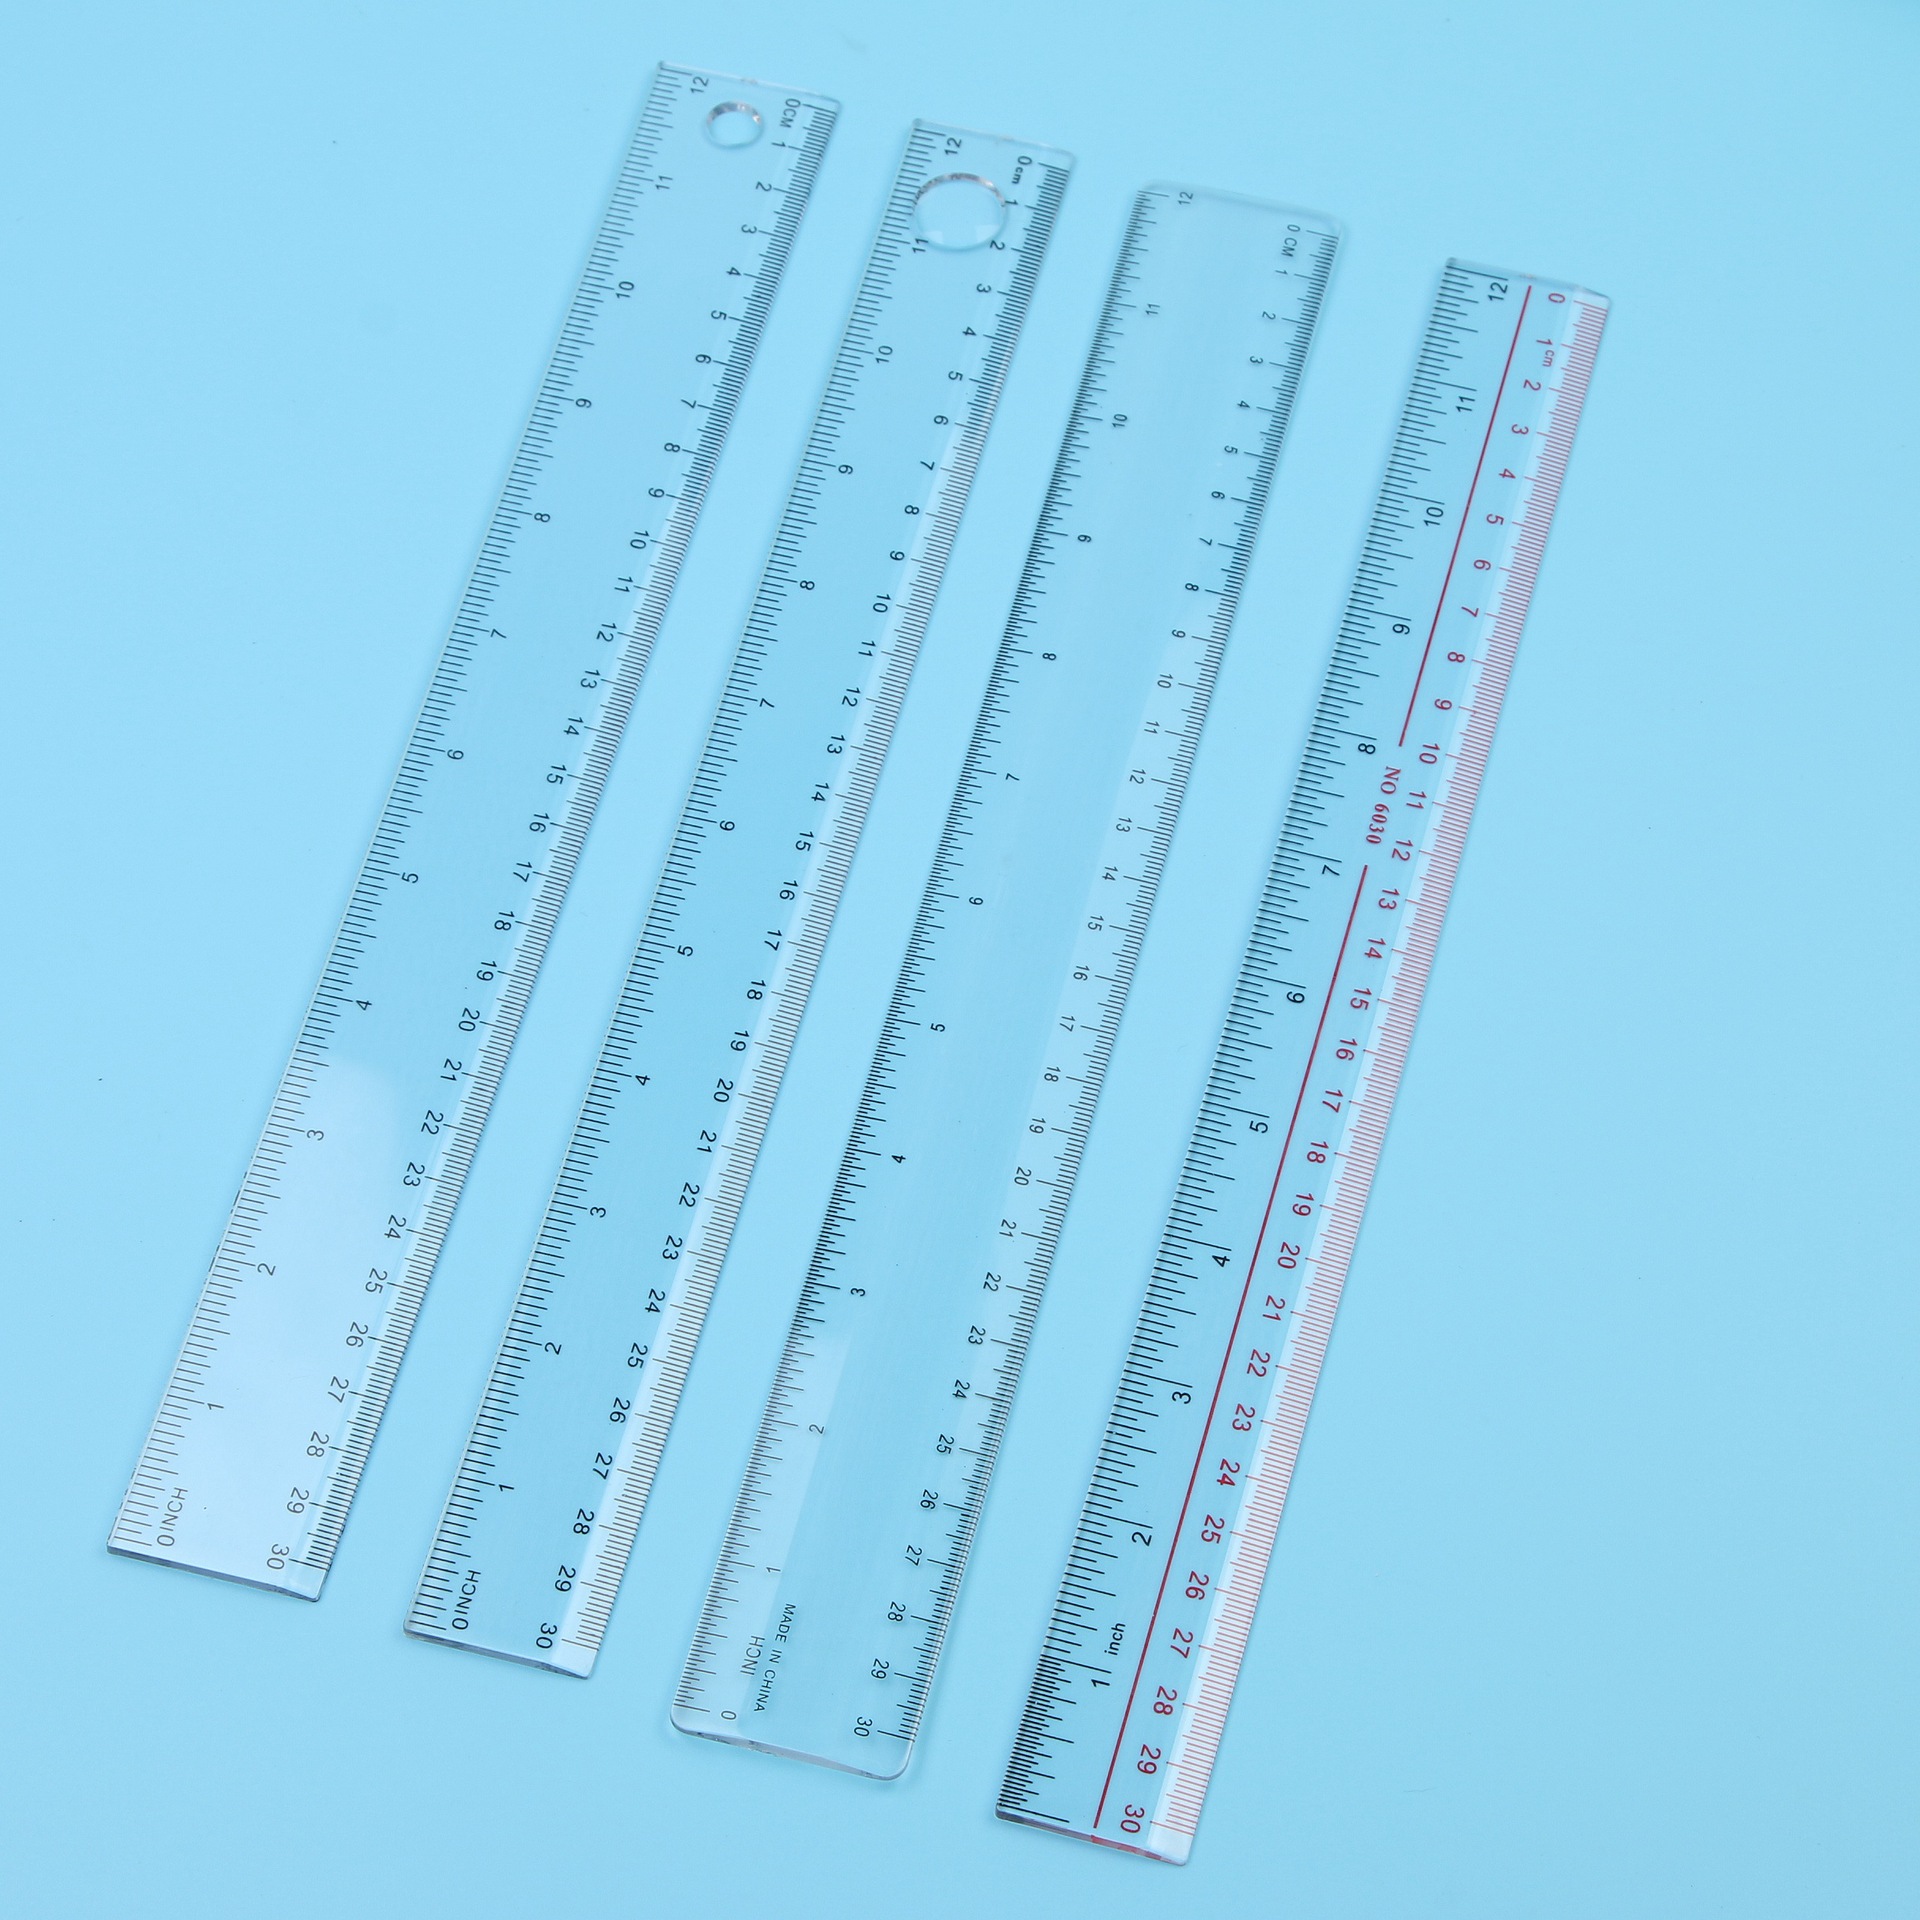 塑料直尺/30cmps/精确测量用品产品图